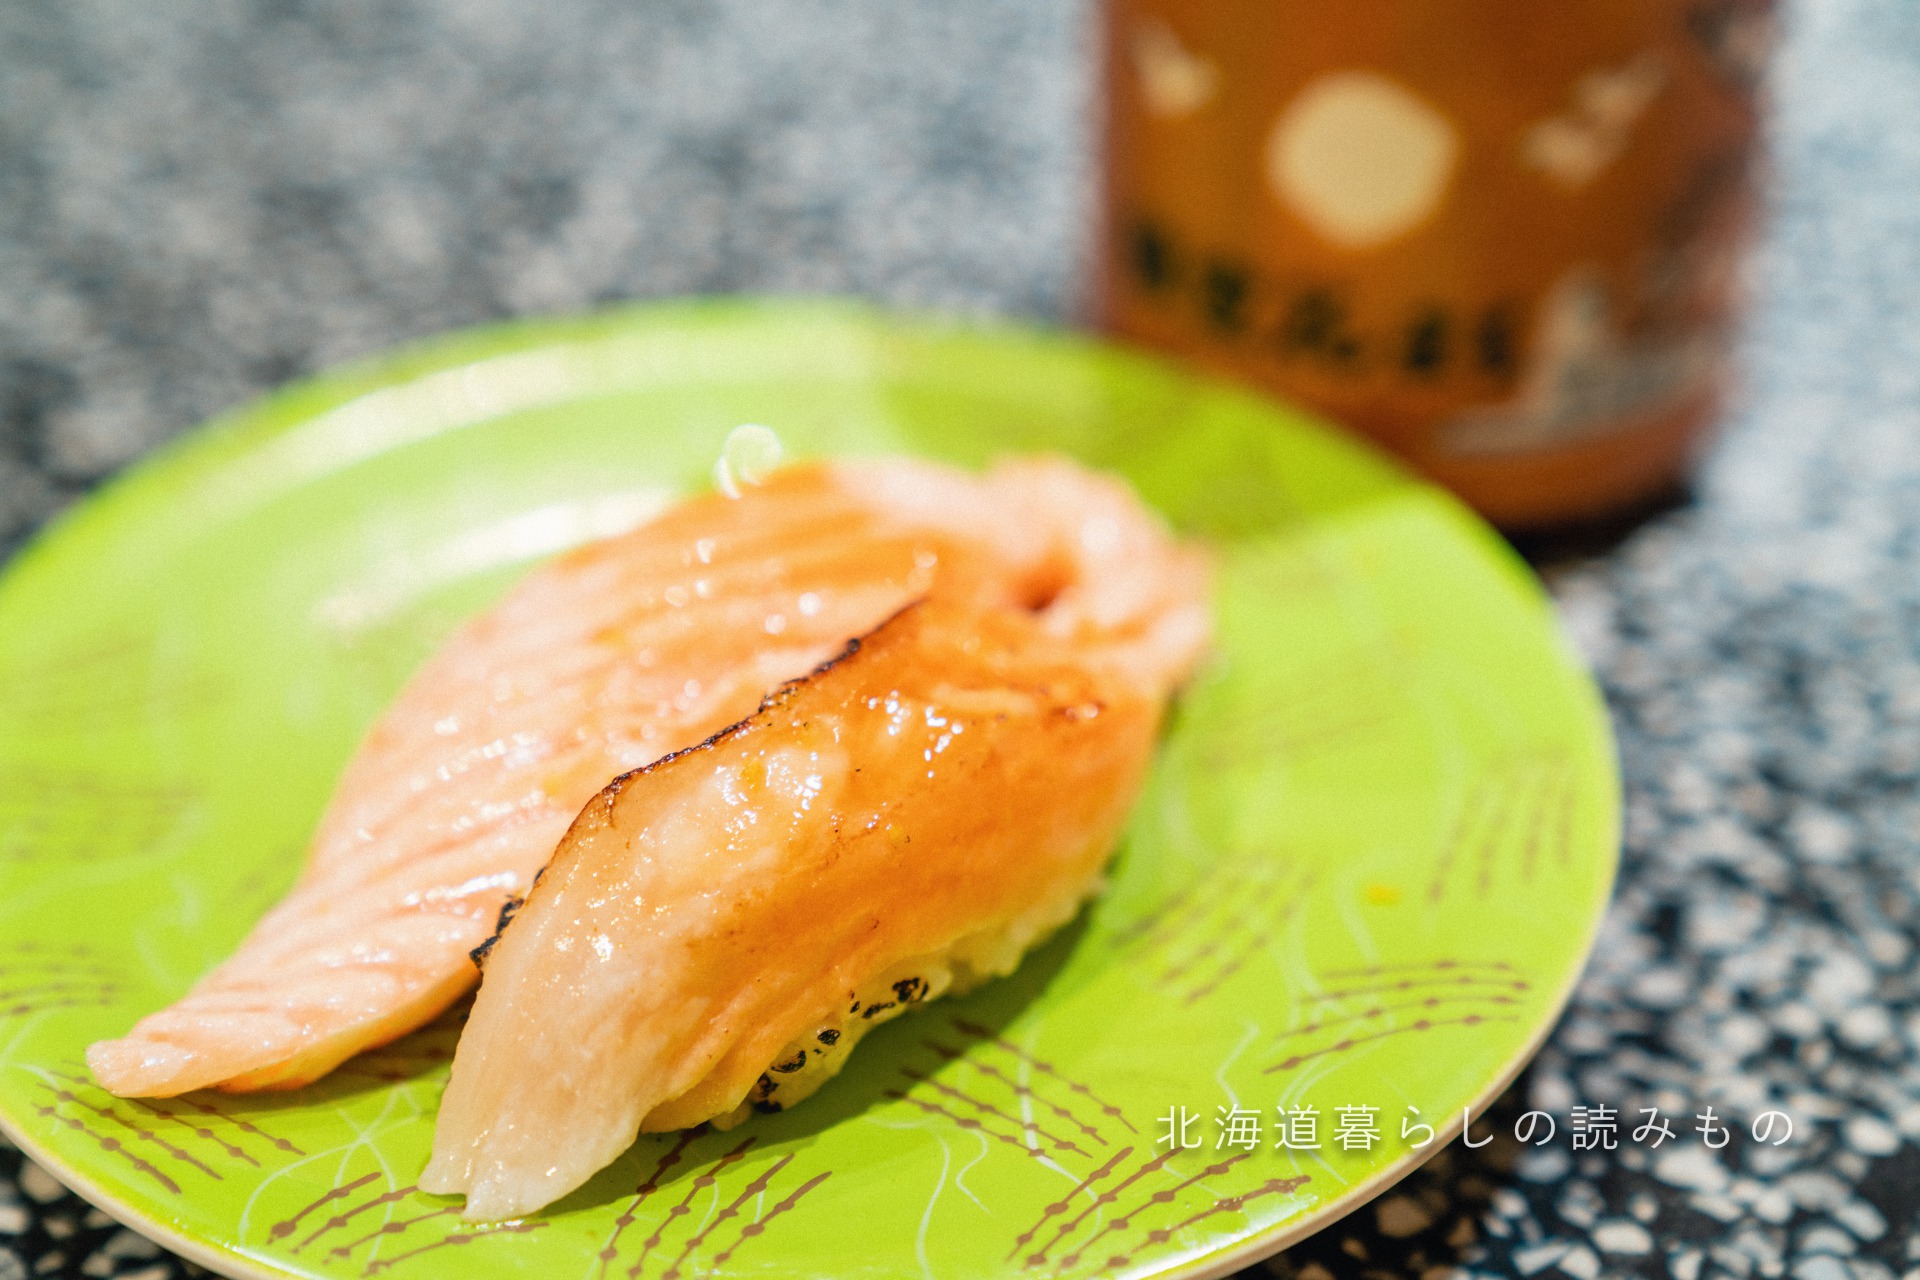 迴轉壽司根室花丸的菜單上的「烤三文魚腩焦的醬油」